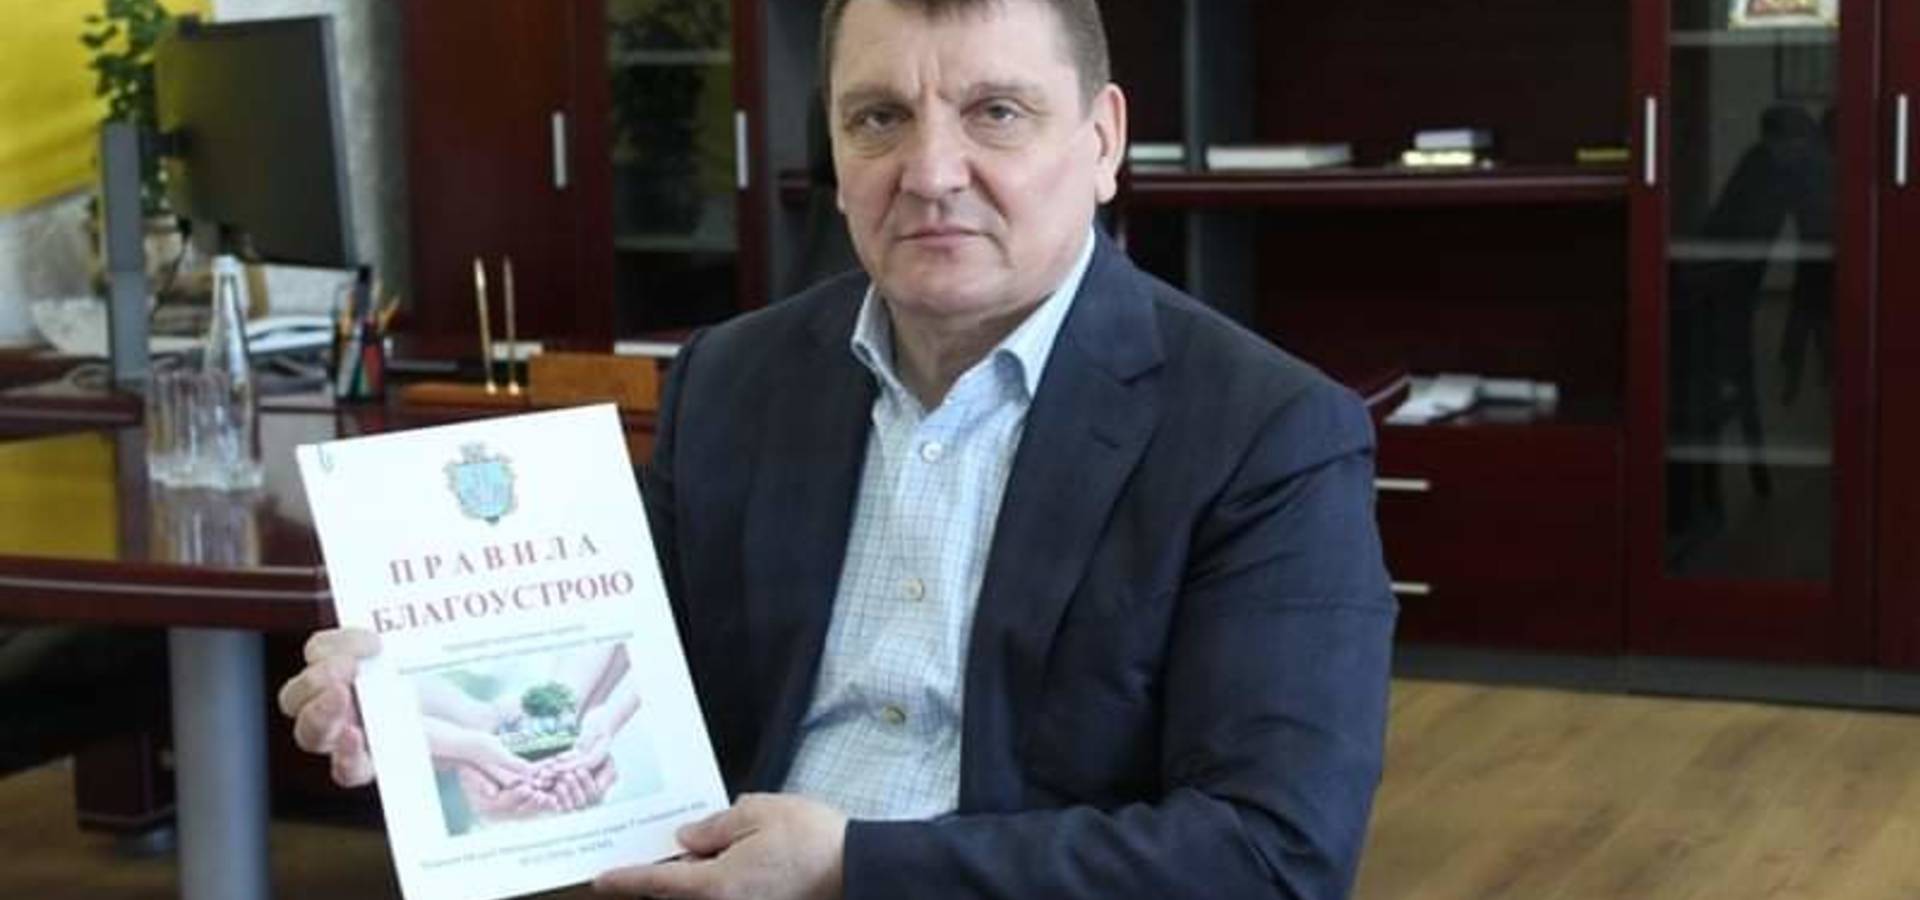 Міський голова Микола Юрчишин закликав хмільничан долучитись до прибирання у місті